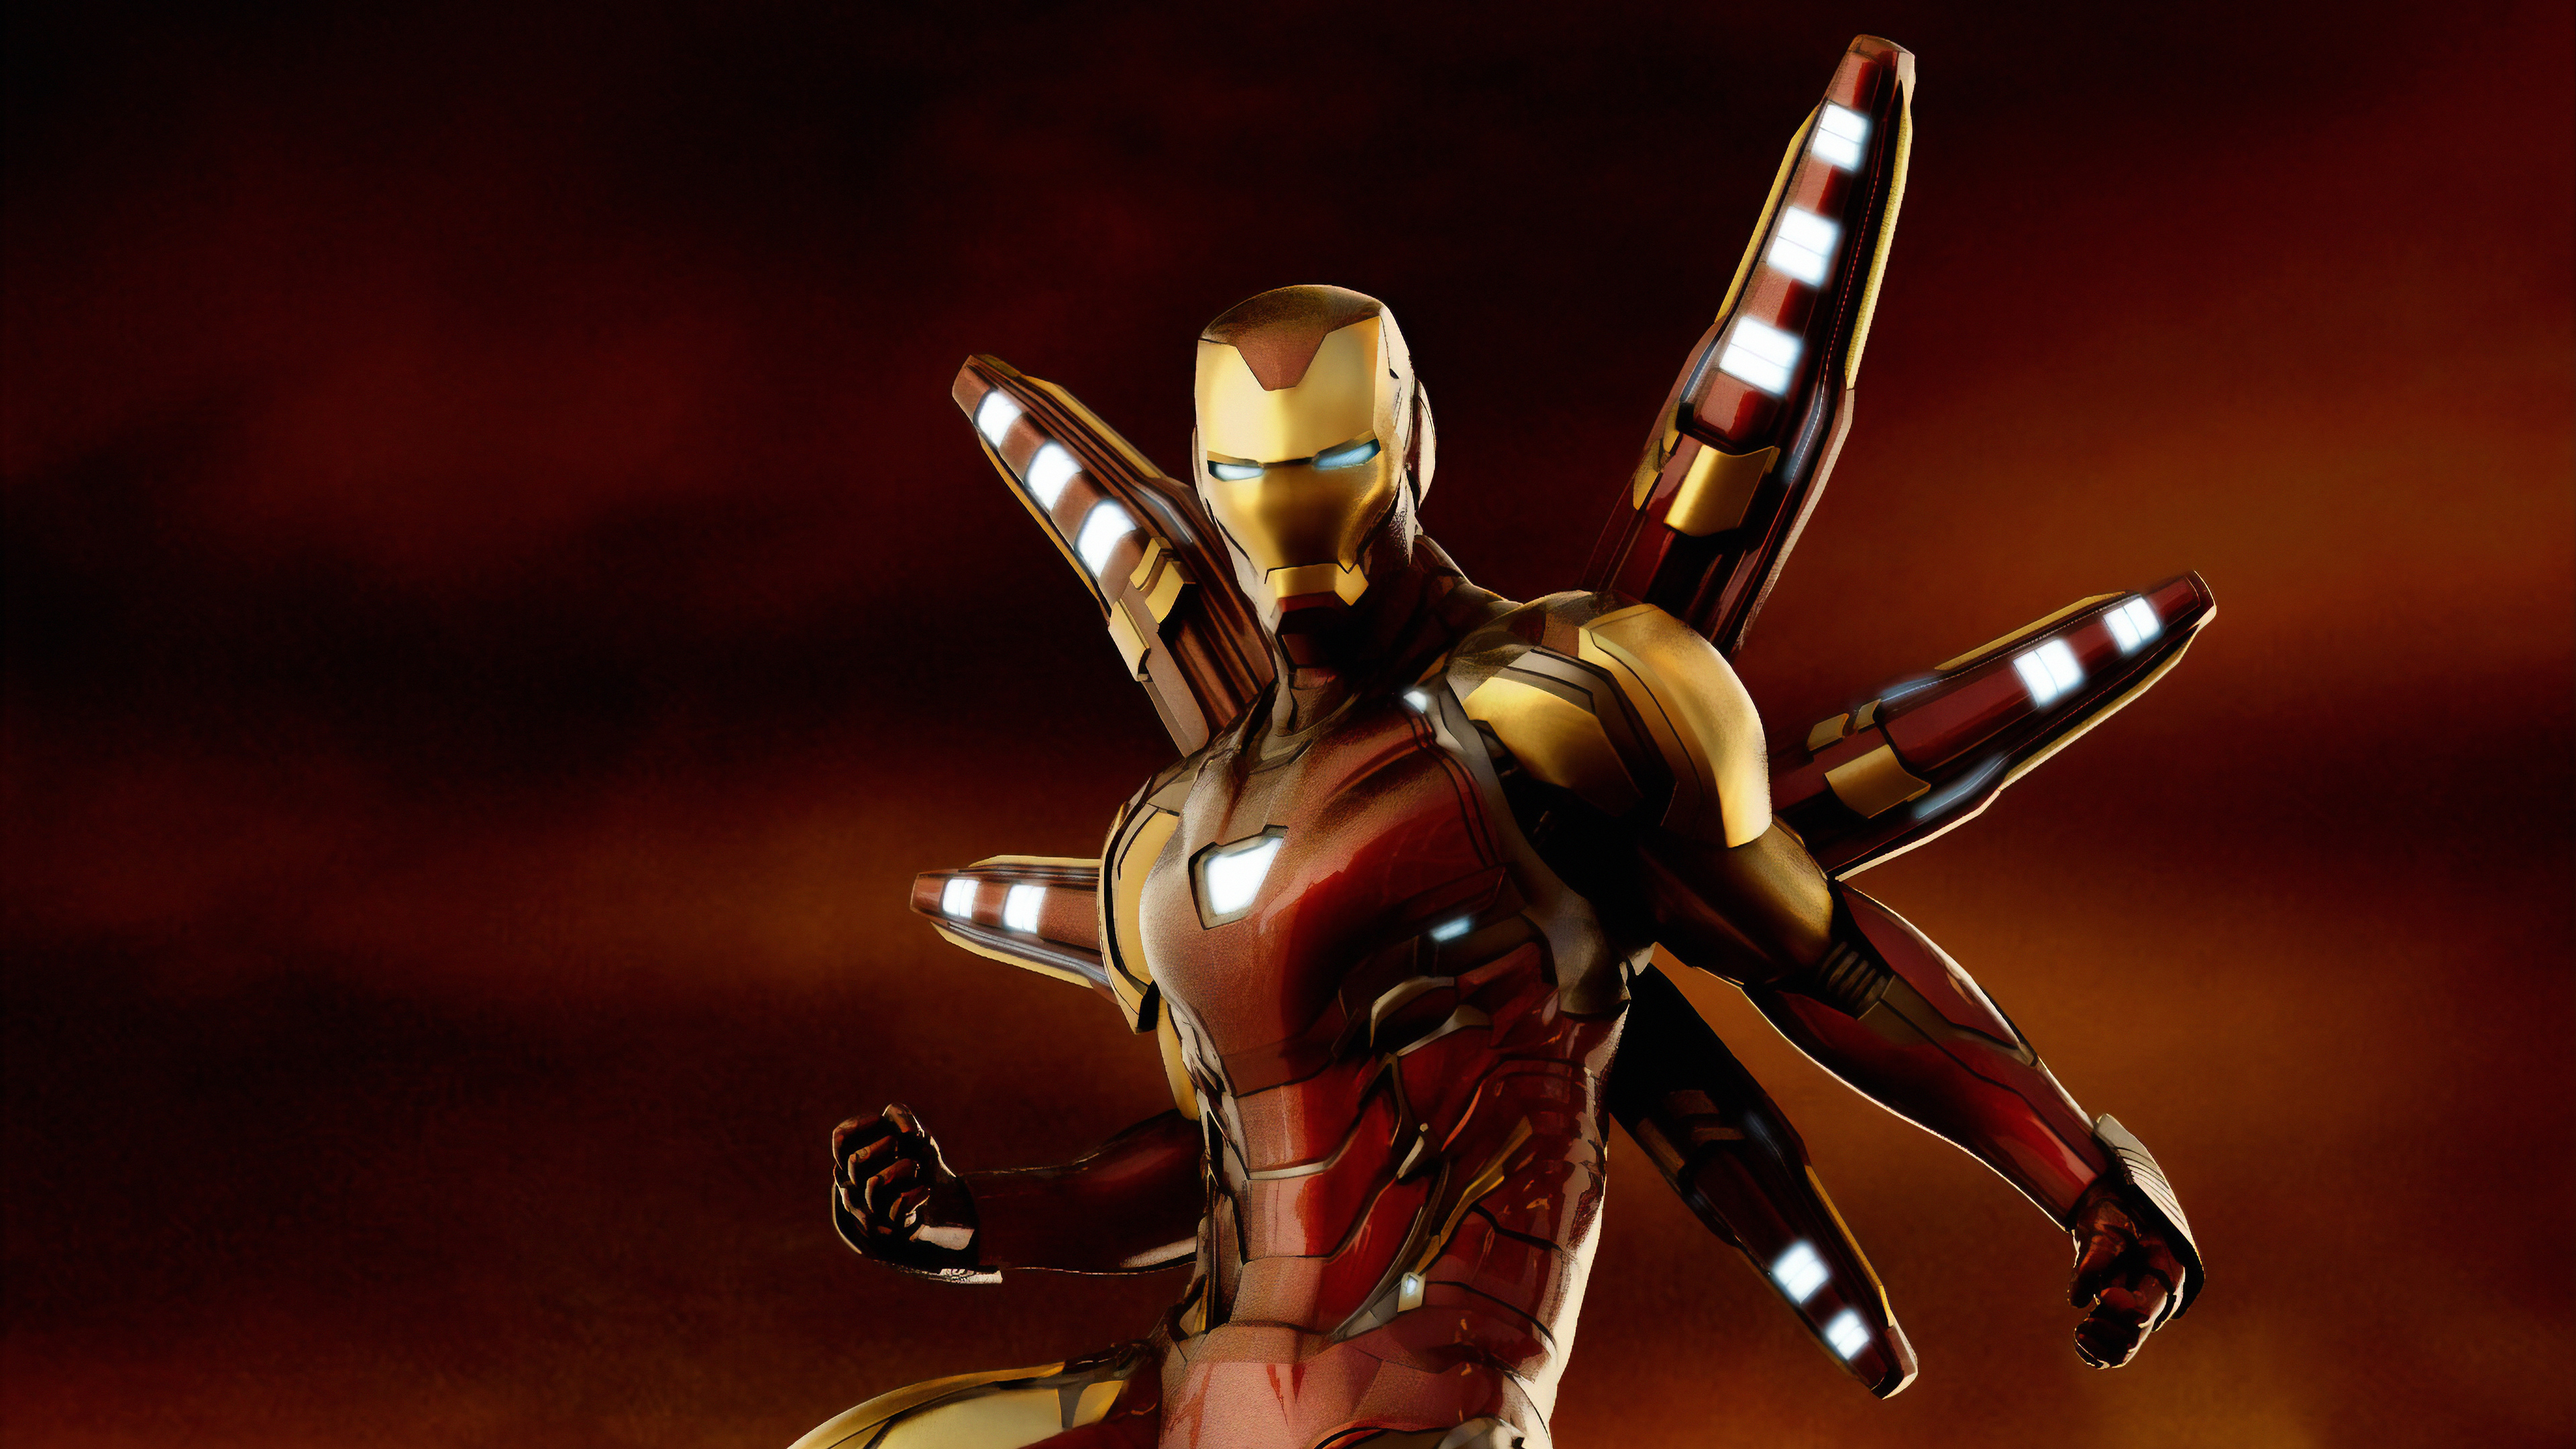 iron man avengers endgame suit 1570394528 - Iron Man Avengers Endgame Suit - superheroes wallpapers, iron man wallpapers, hd-wallpapers, digital art wallpapers, artwork wallpapers, artstation wallpapers, 4k-wallpapers